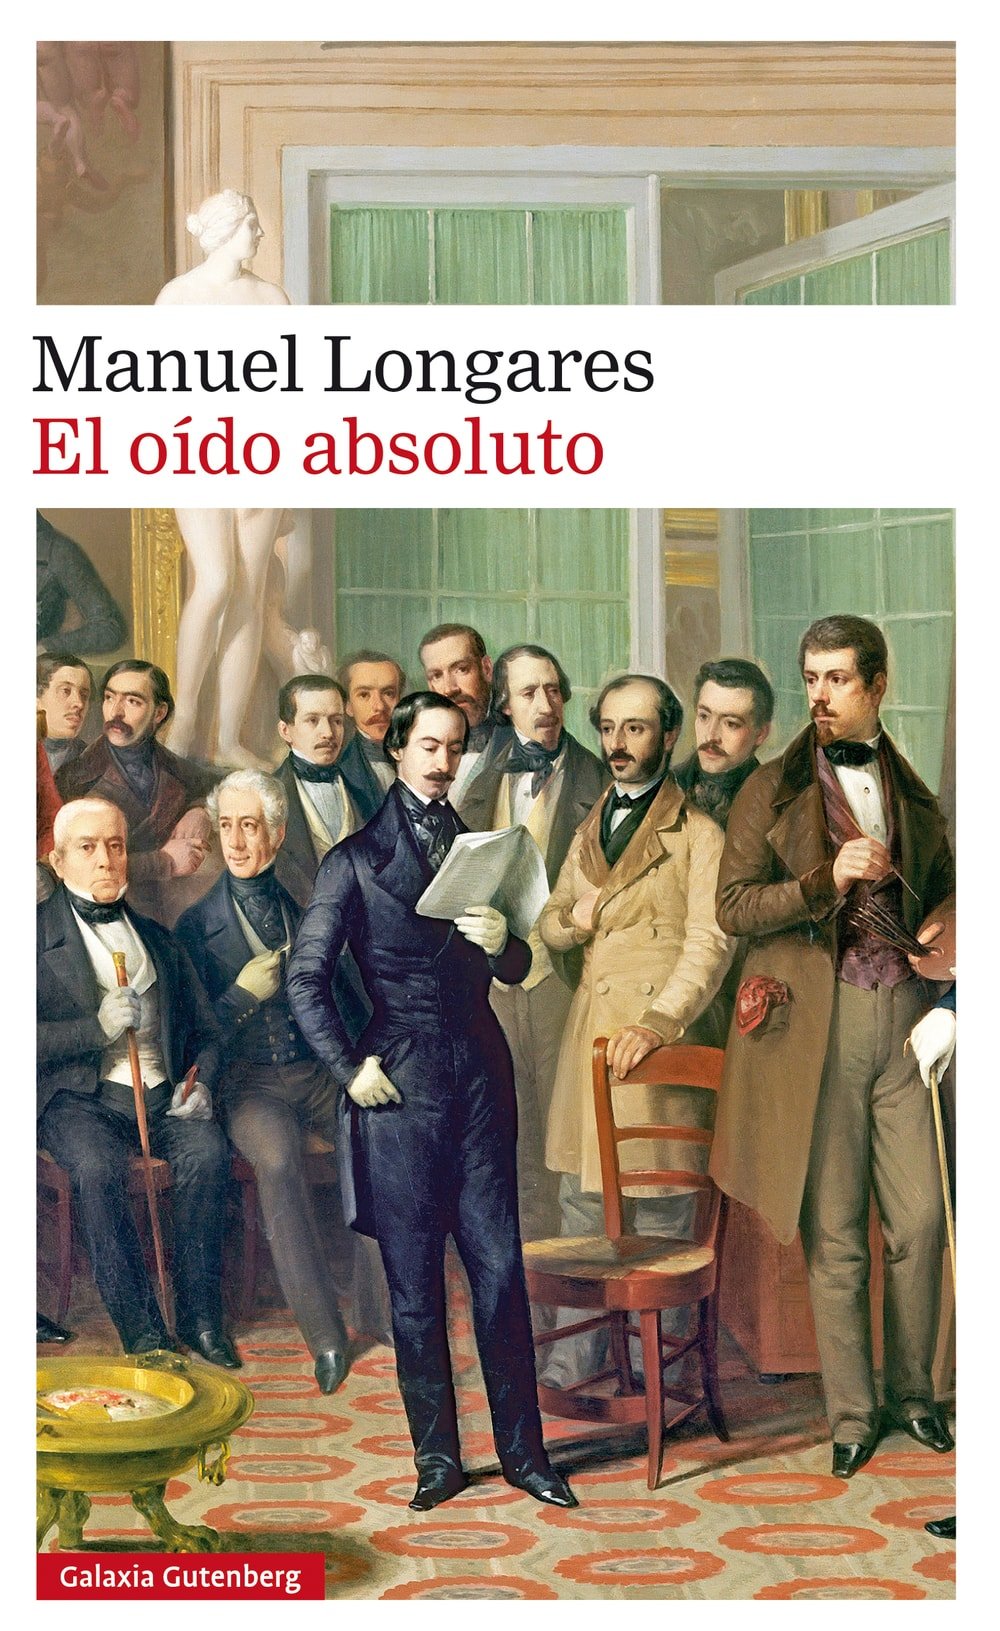 El oido absoluto, Manuel Longares